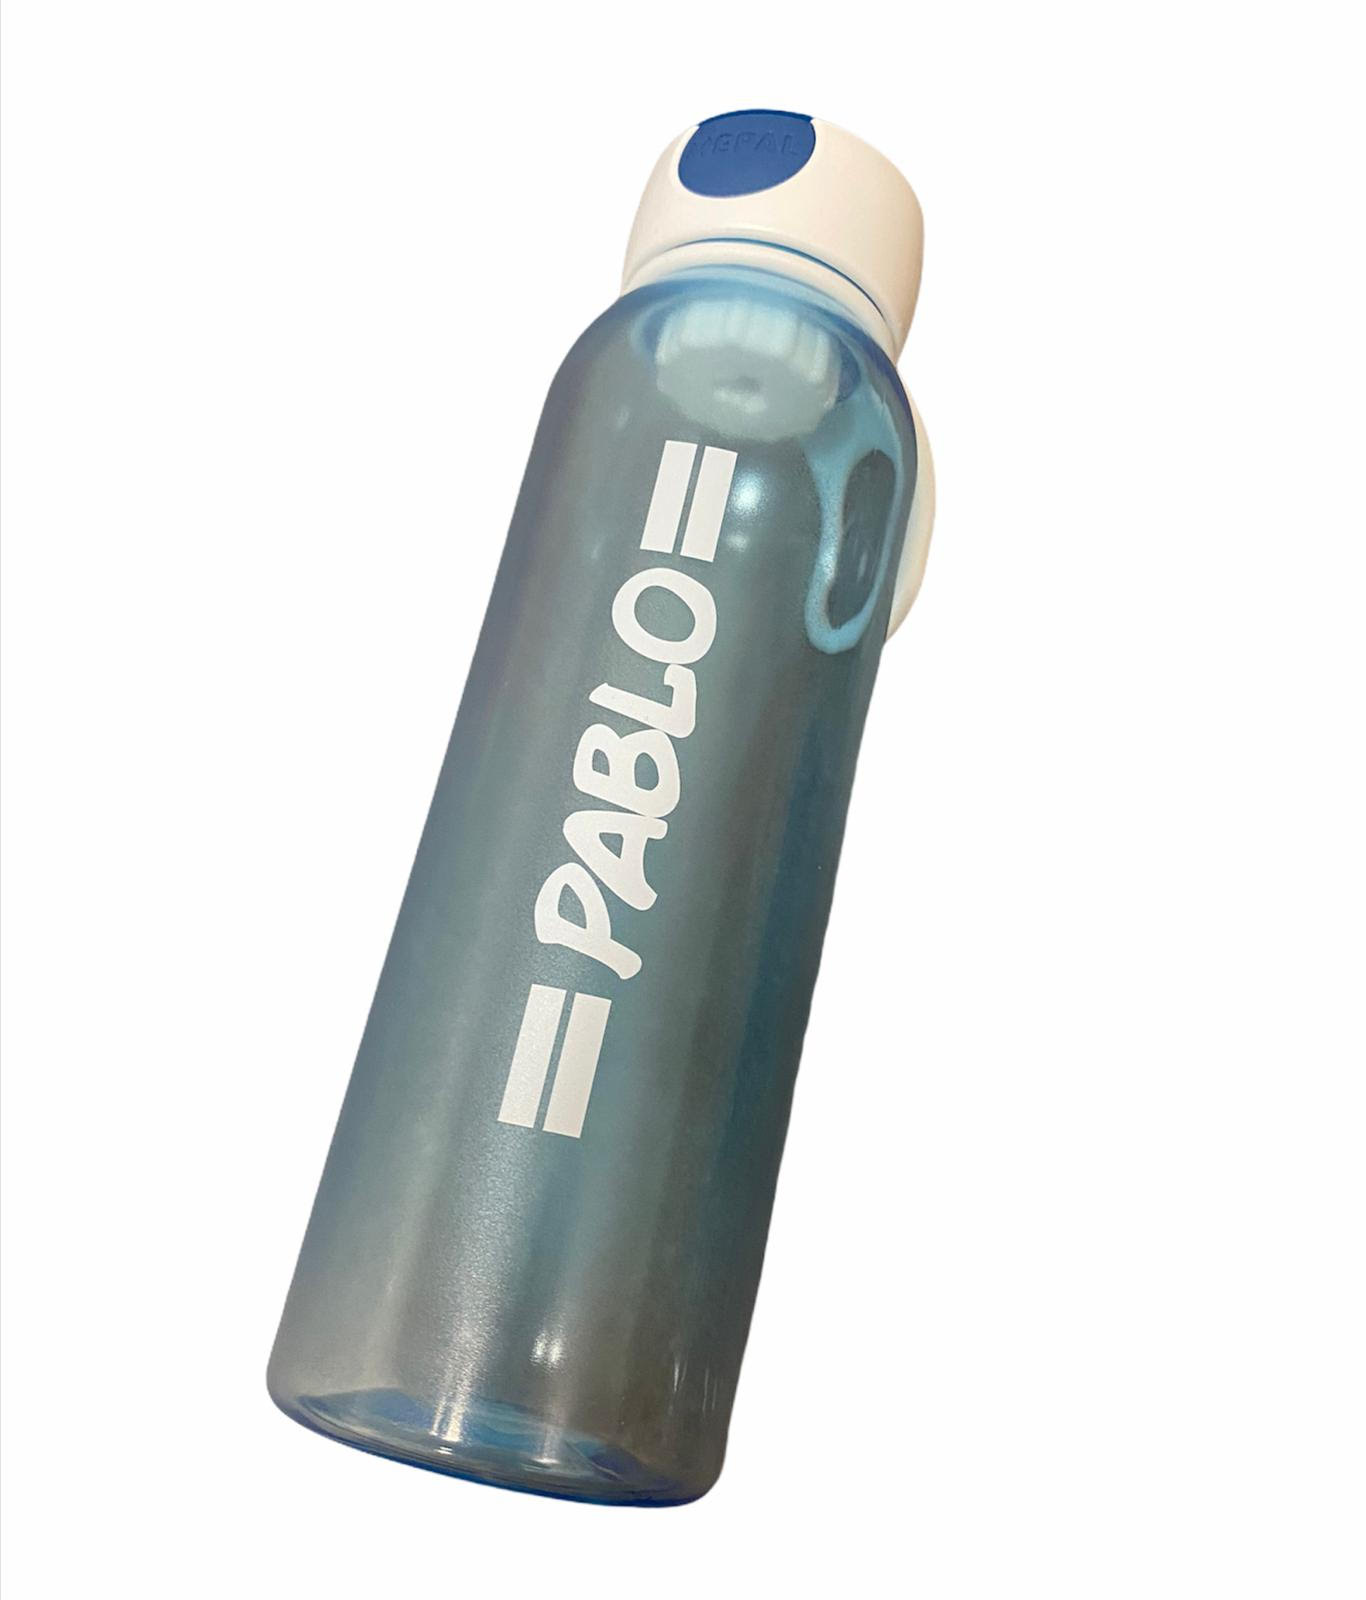 Water bottle pop-up Campus 500 ml / 17 oz - pink